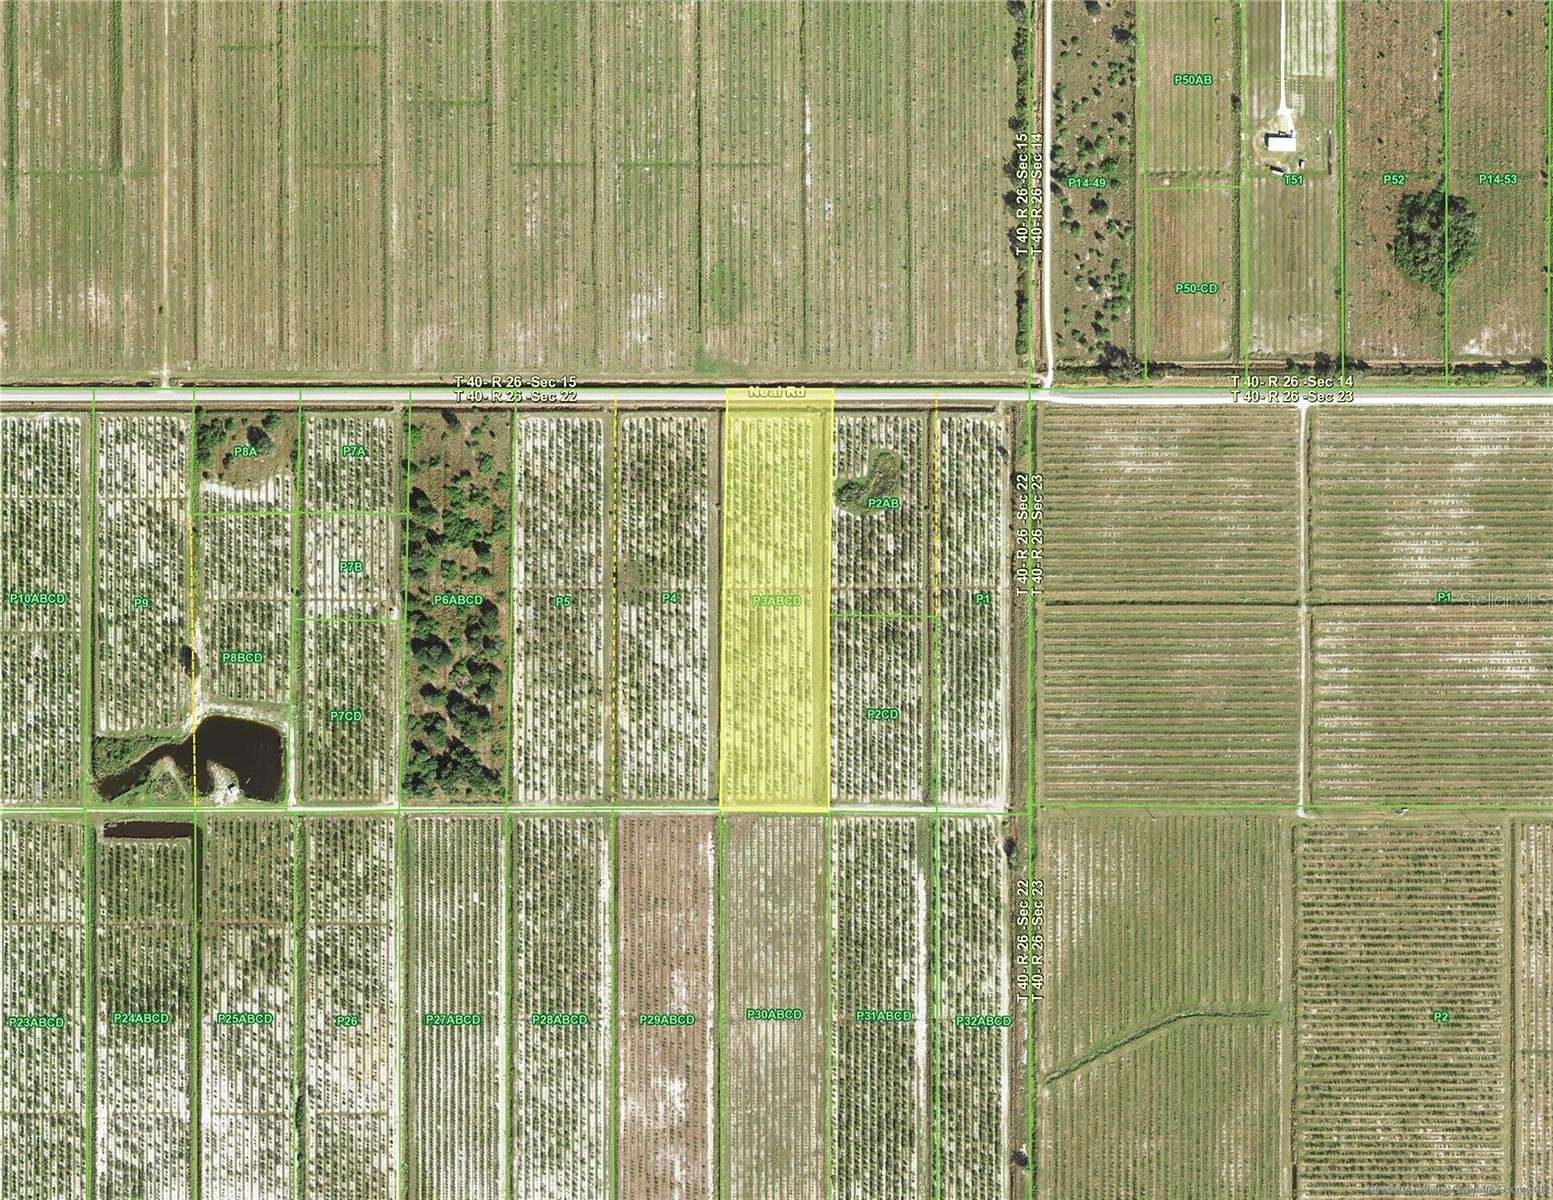 10 Acres of Land for Sale in Punta Gorda, Florida